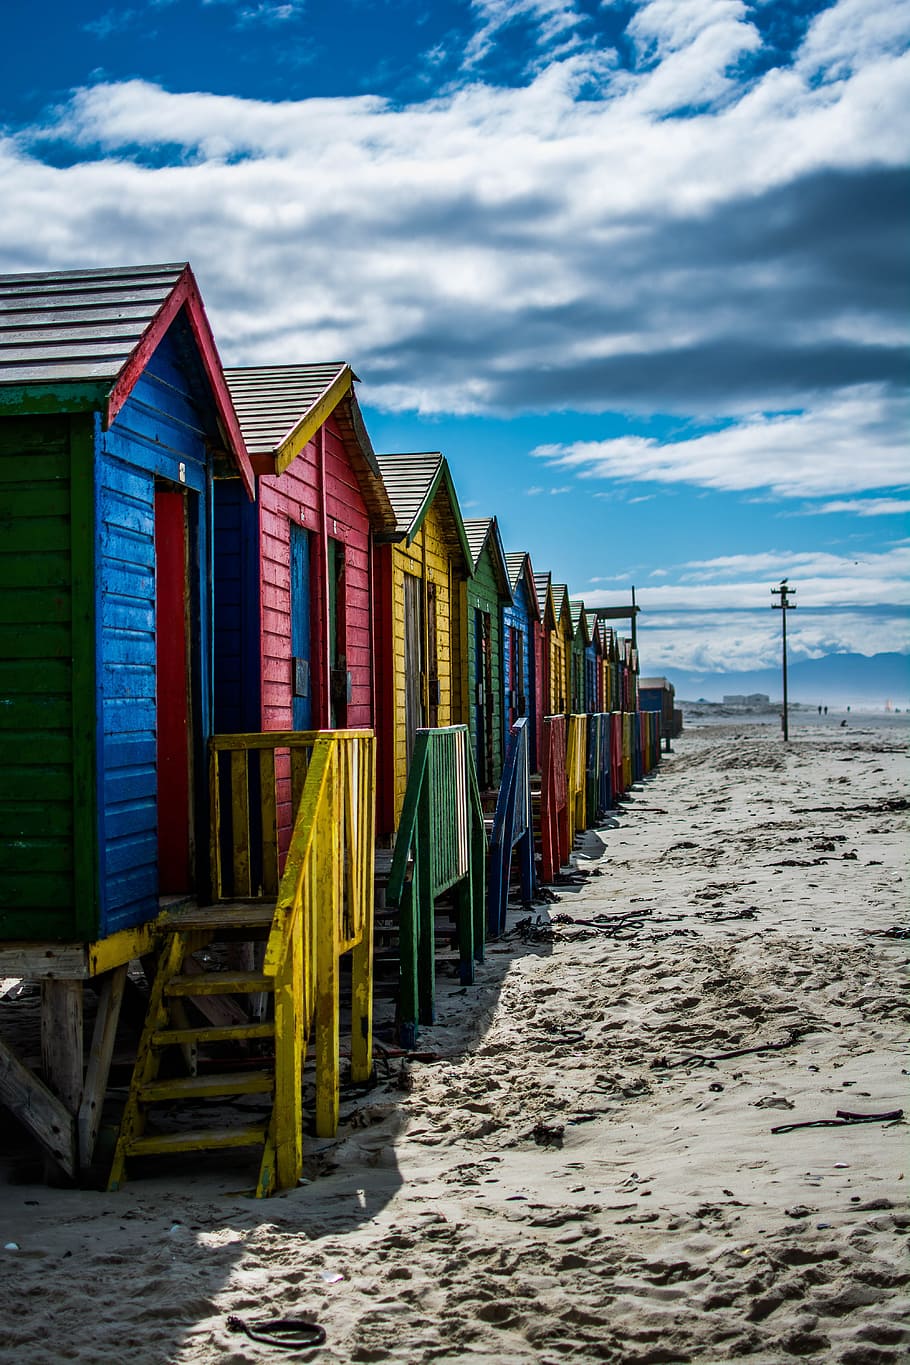 lote de cabañas, arena, muizenberg, sudáfrica, colorido, cabaña, casas de baños, ciudad del cabo, playa de arena, playa